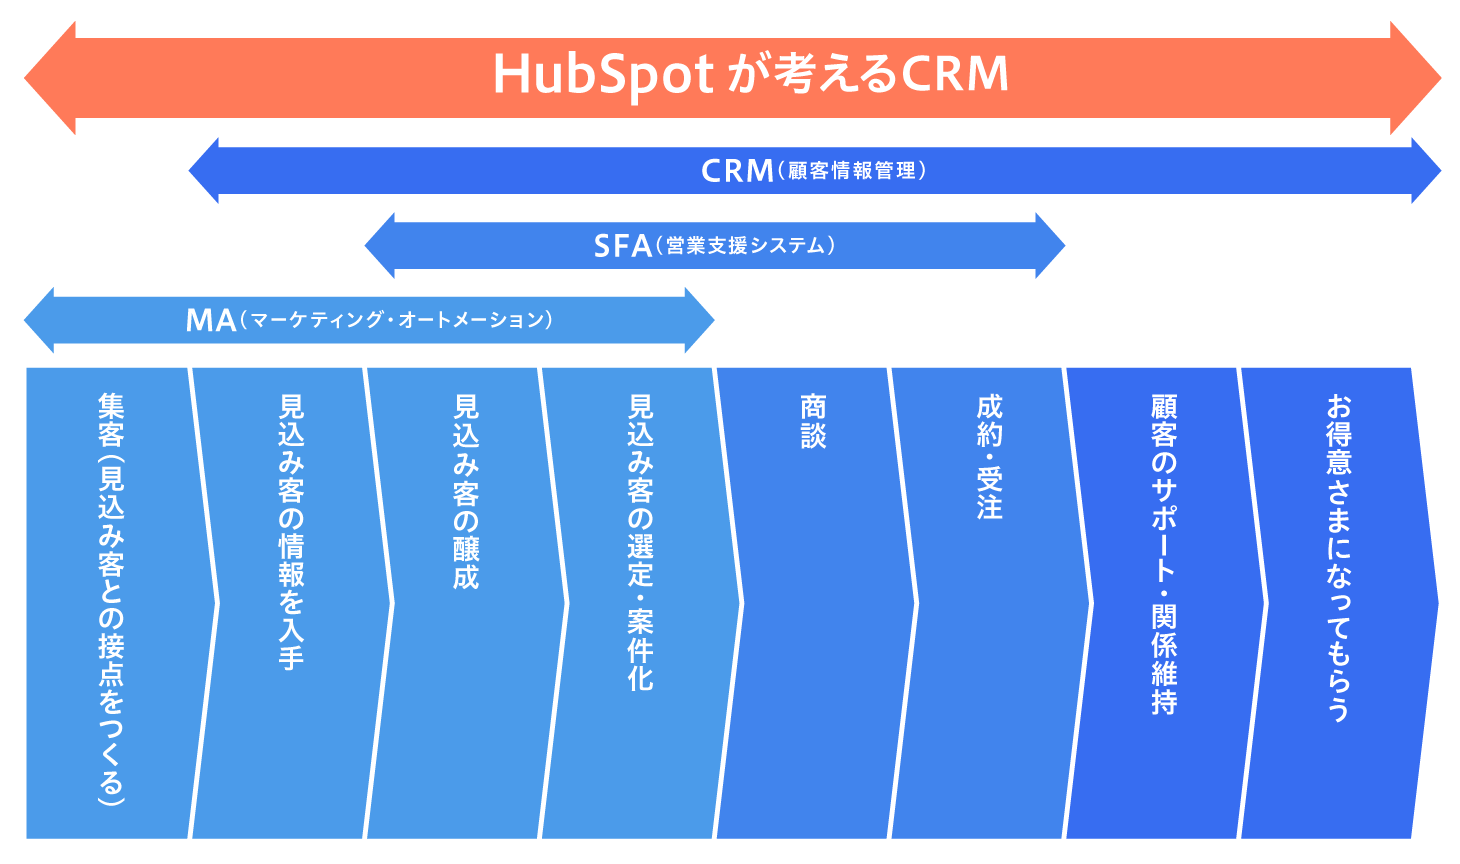 HubSpotが考えるCRMが、マーケティング活動においてカバーする領域の図